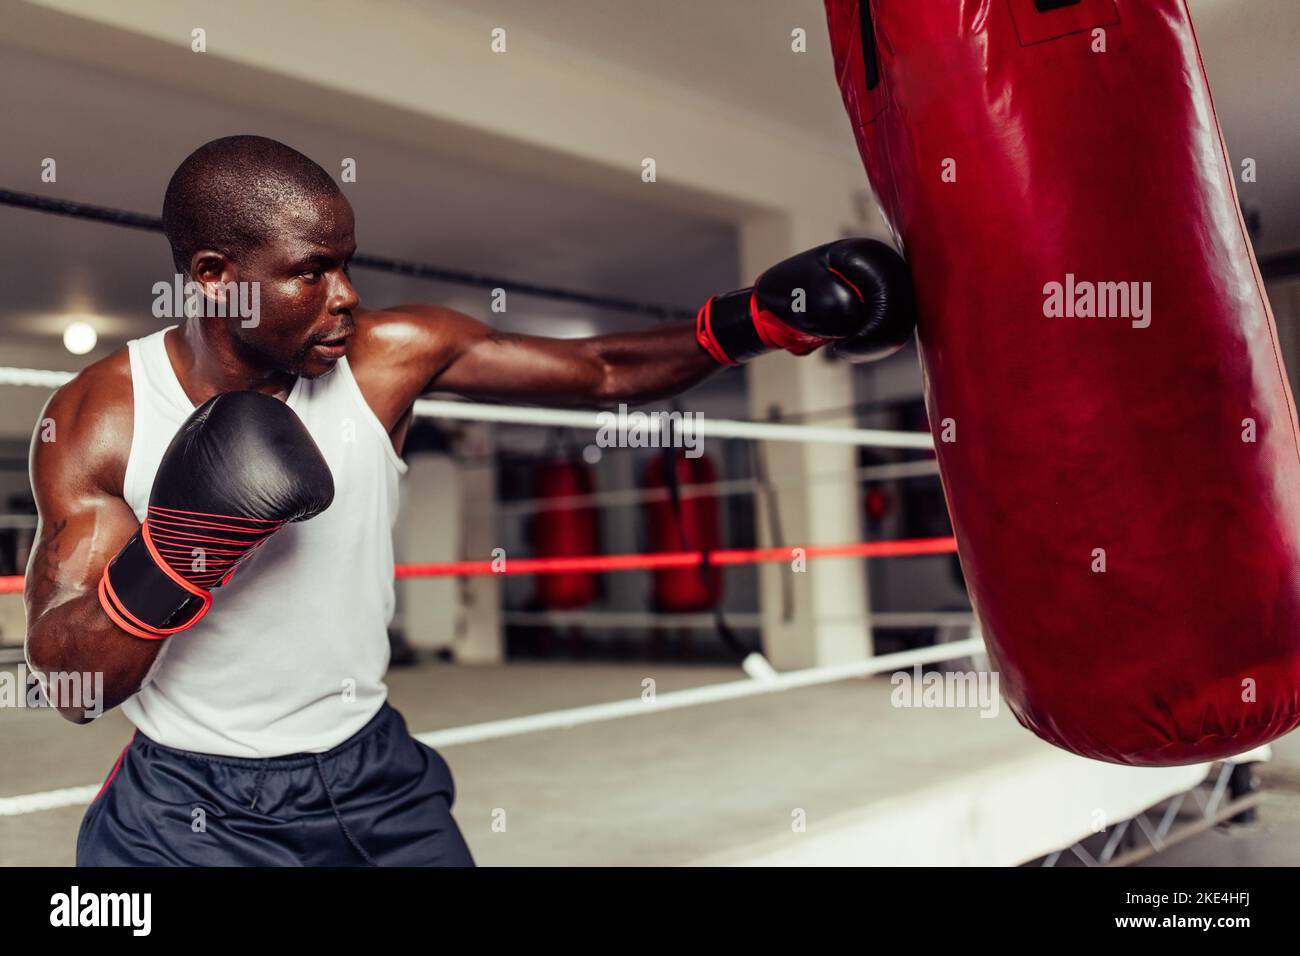 Fit afrikanischen Boxer werfen einen starken Schlag auf einen roten Leder Boxsack in einem Fitness-Studio. Sportlicher junger Mann, der in einer Boxhalle trainiert Stockfoto